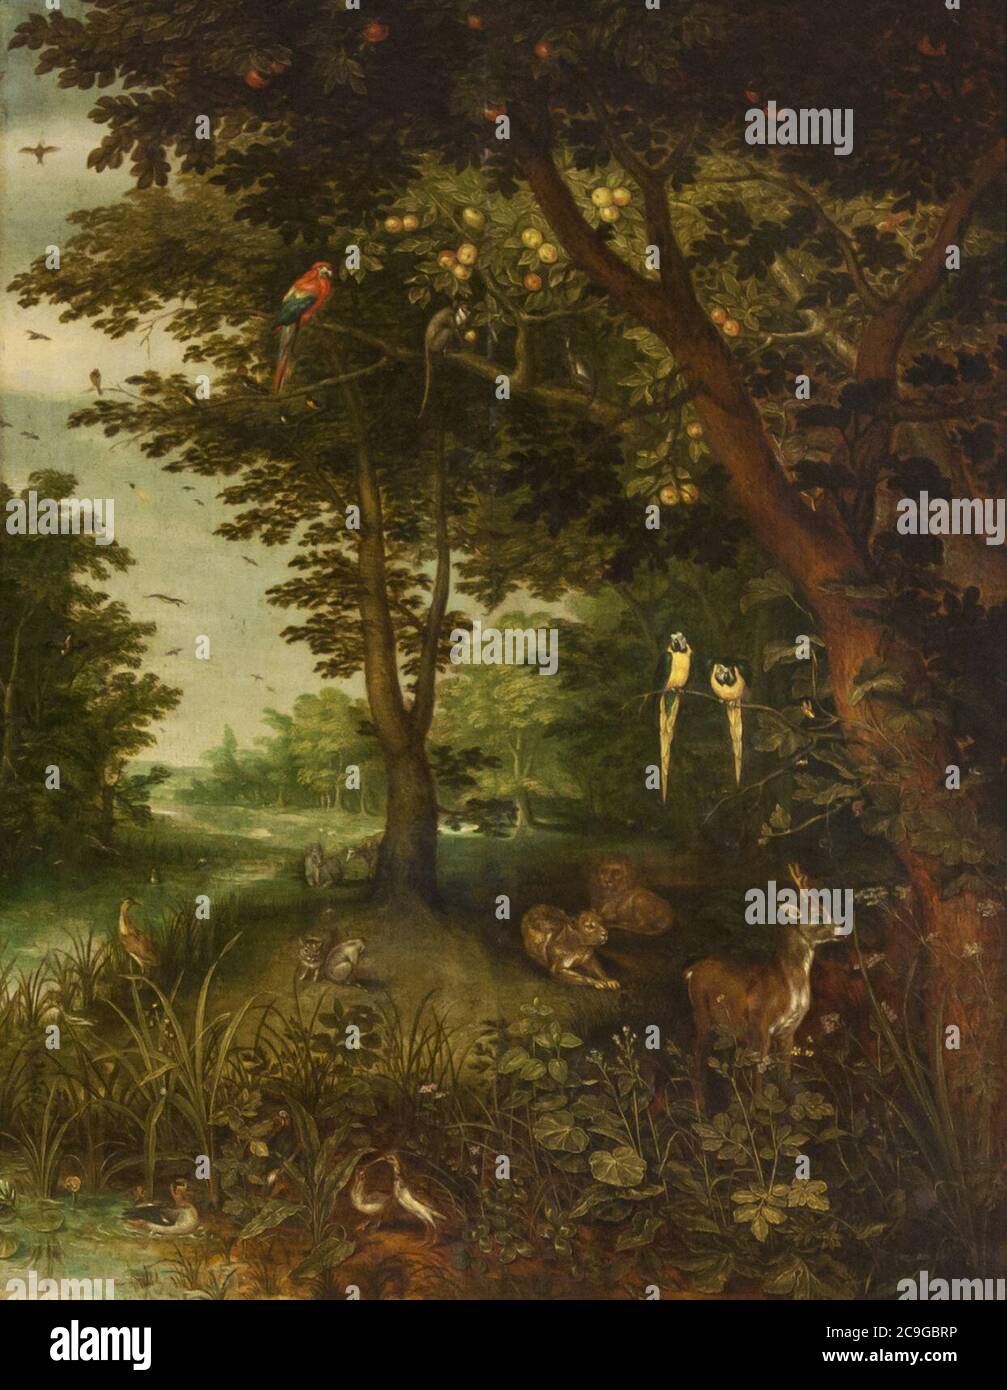 Jan Brueghel de Oude (1568-1625) - Het paradijs met dieren (1620) - Sevilla Bellas Artes 22-03-2011 11-08-00. Stockfoto